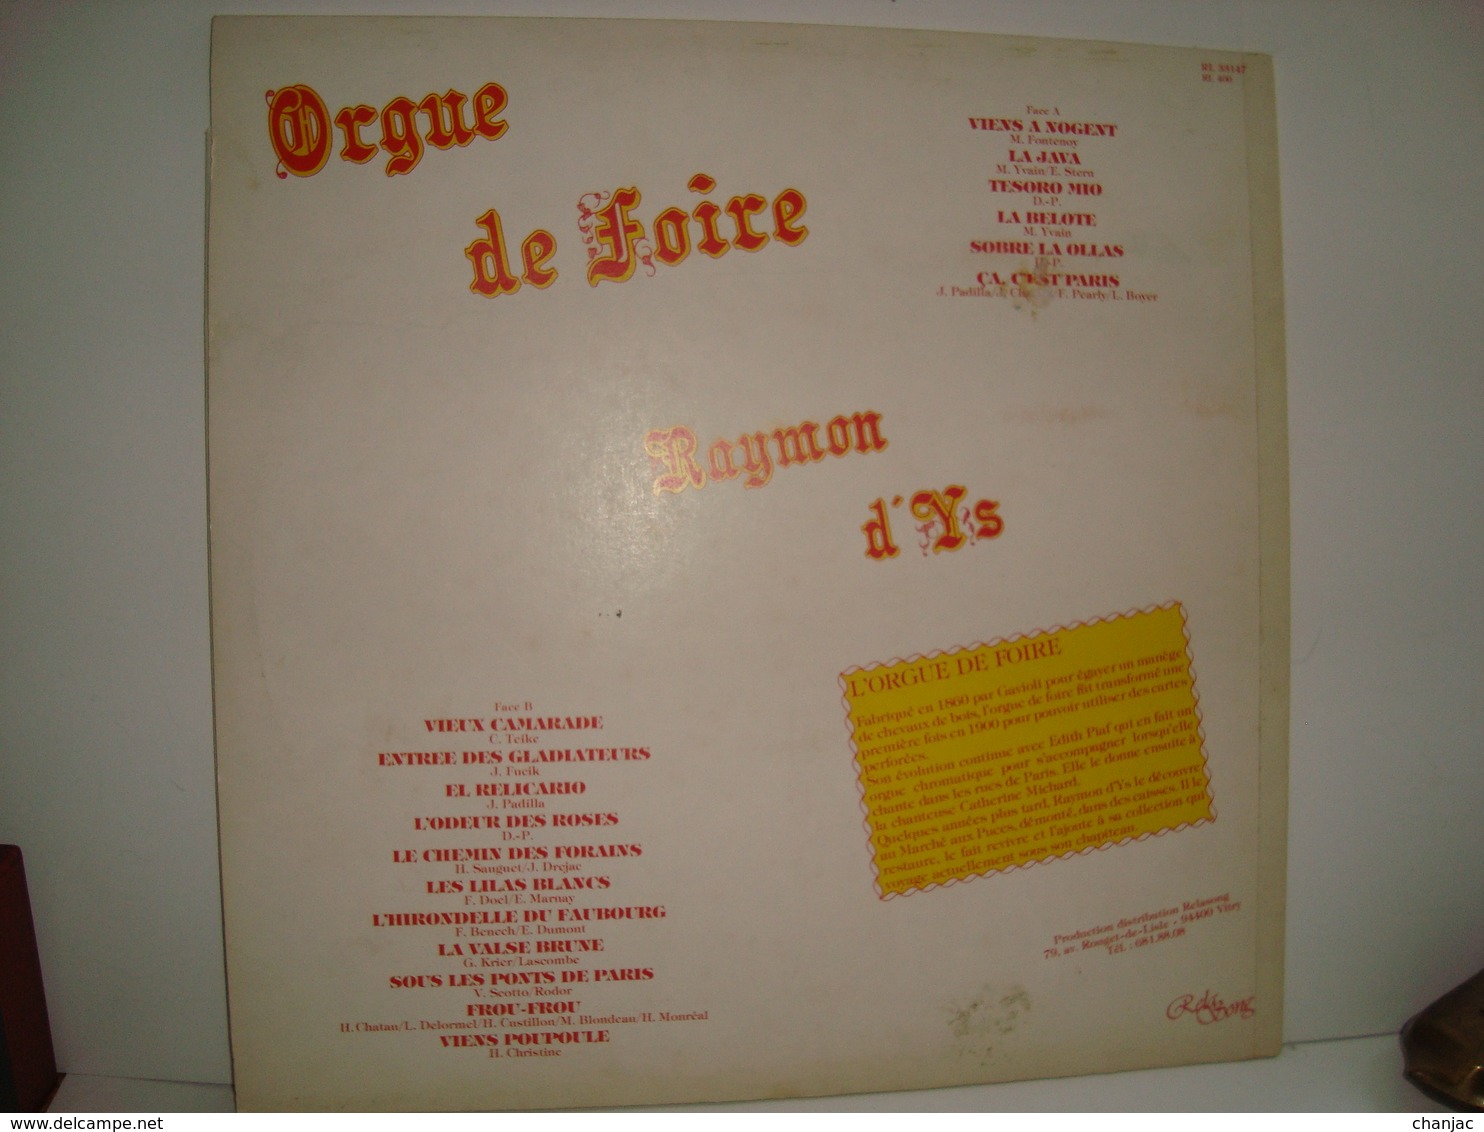 33 Tours: ORGUES DE FOIRE - RAYMON D'YS - Reda Song 33147 (rare) - Autres - Musique Française